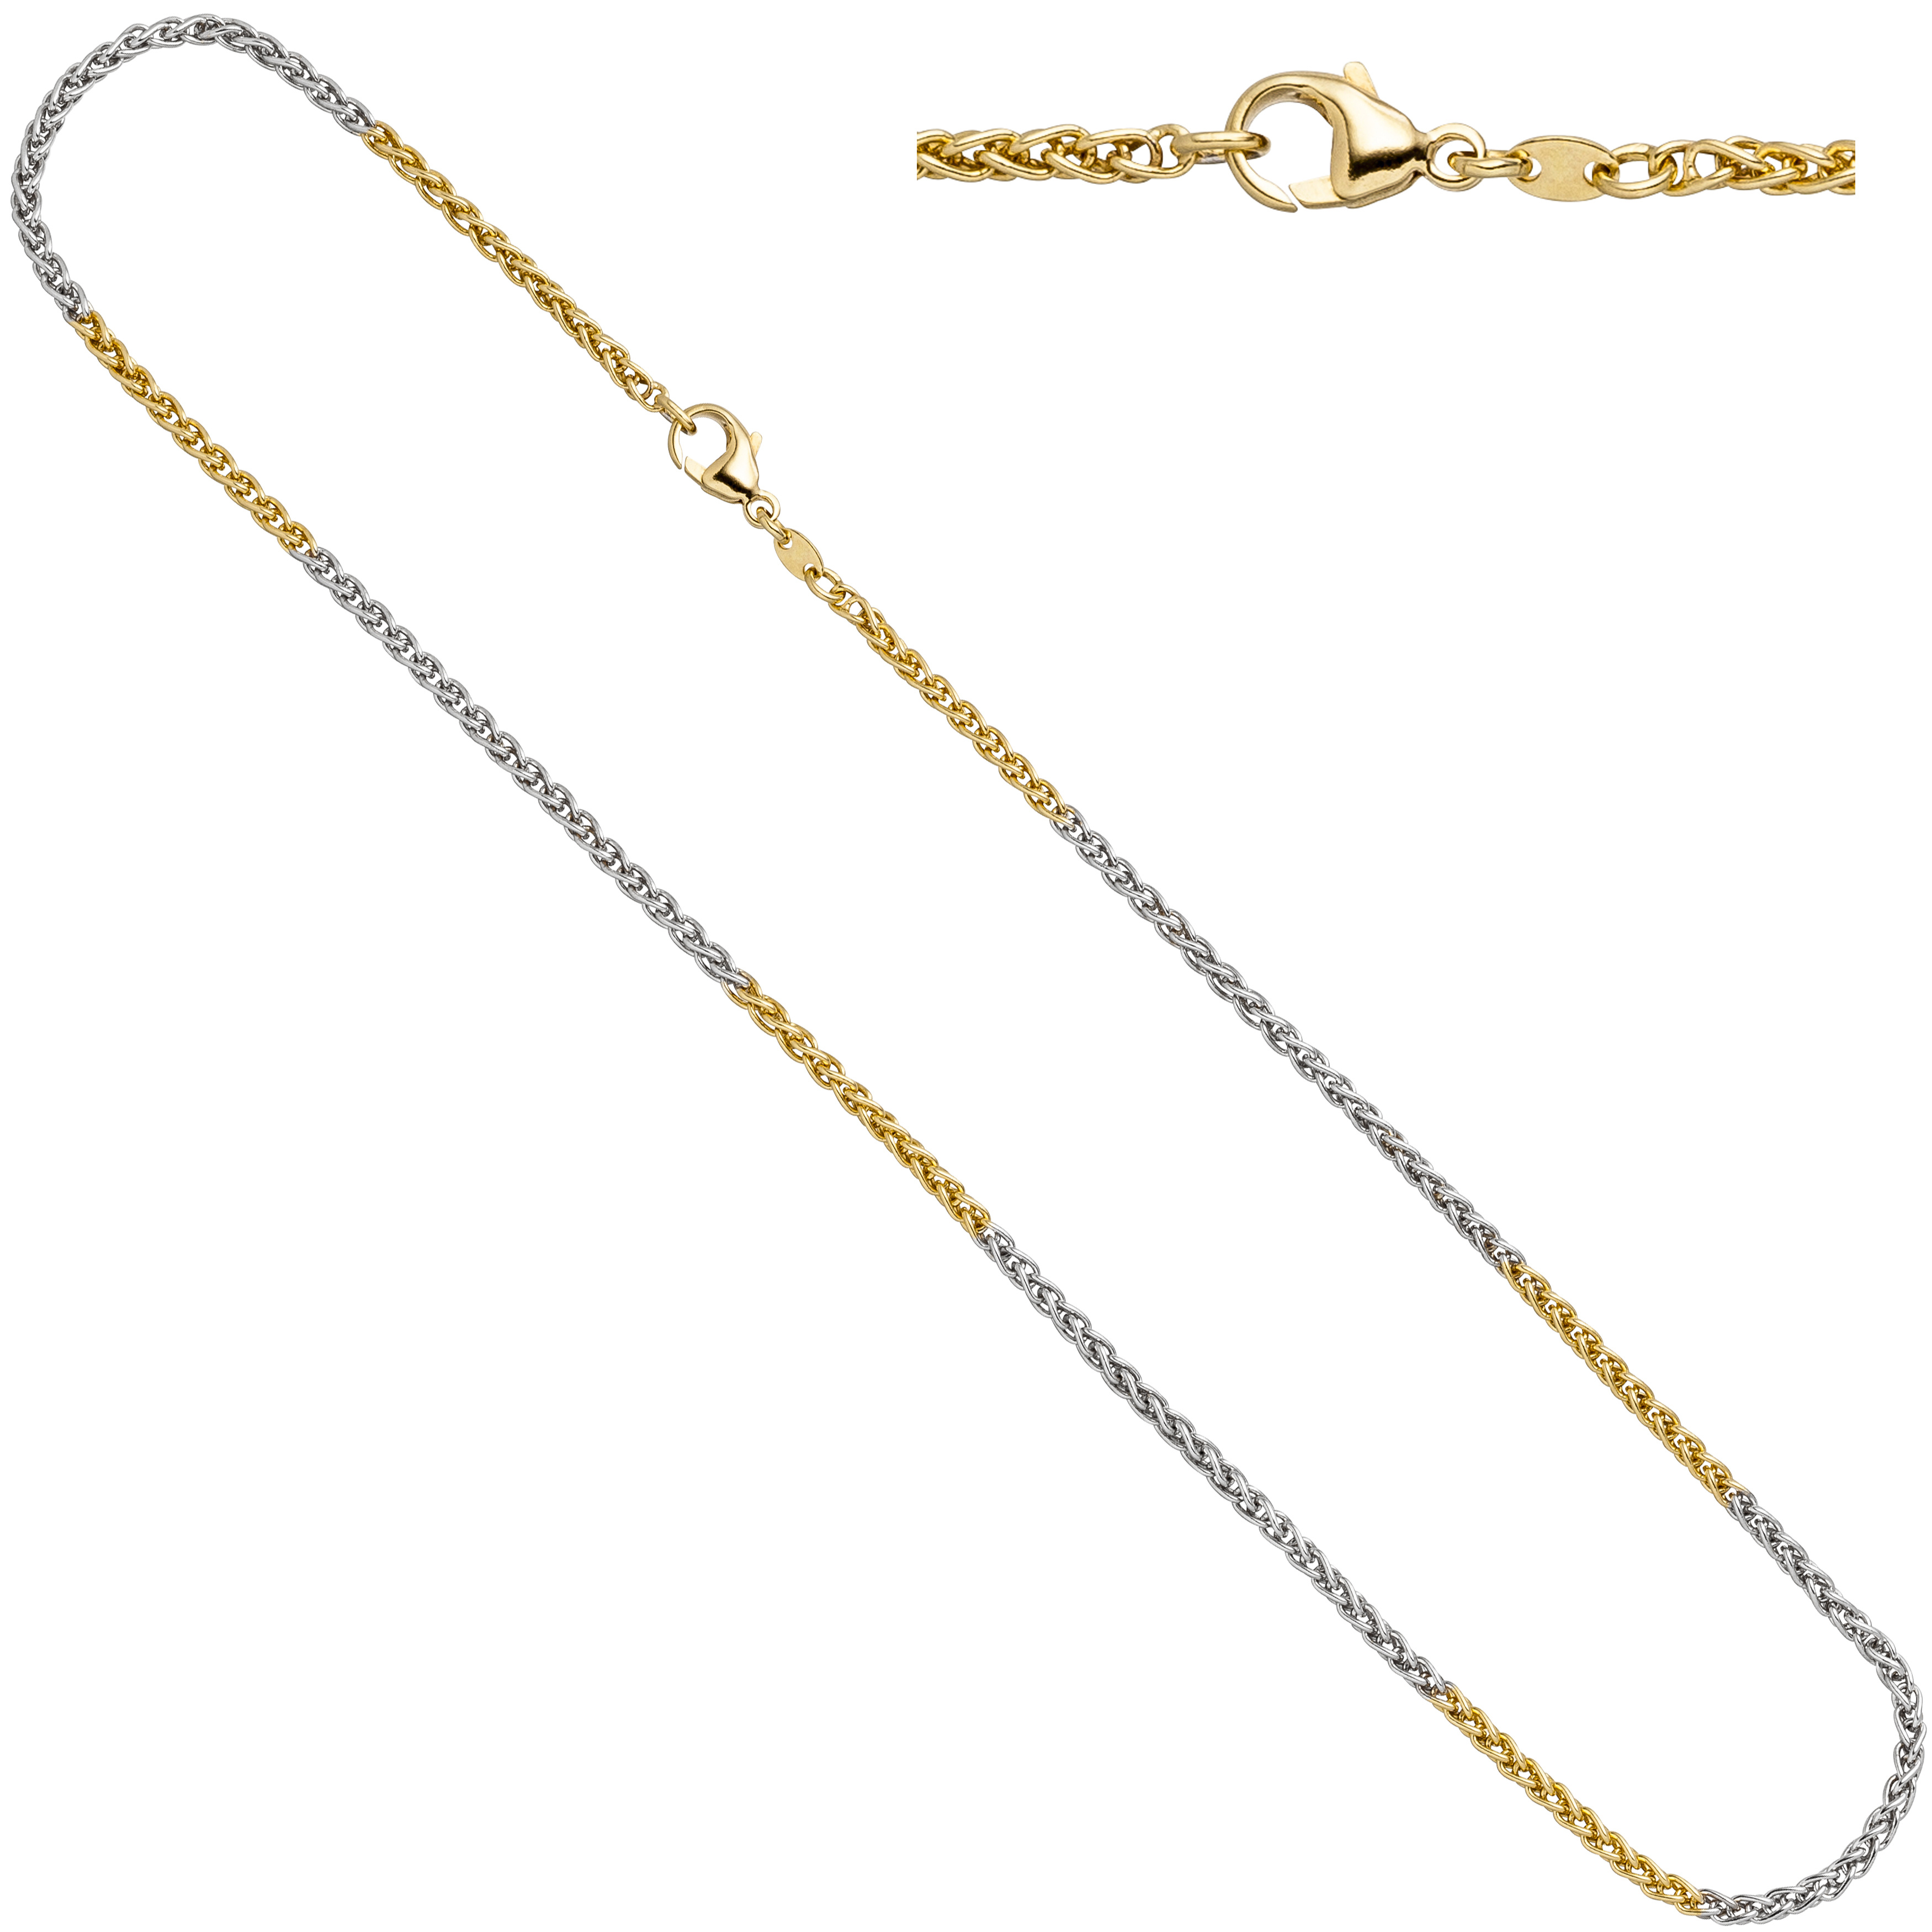 Zopfkette 585 Gelbgold Weißgold 2,2 mm 42 cm Gold Kette Halskette Karabiner